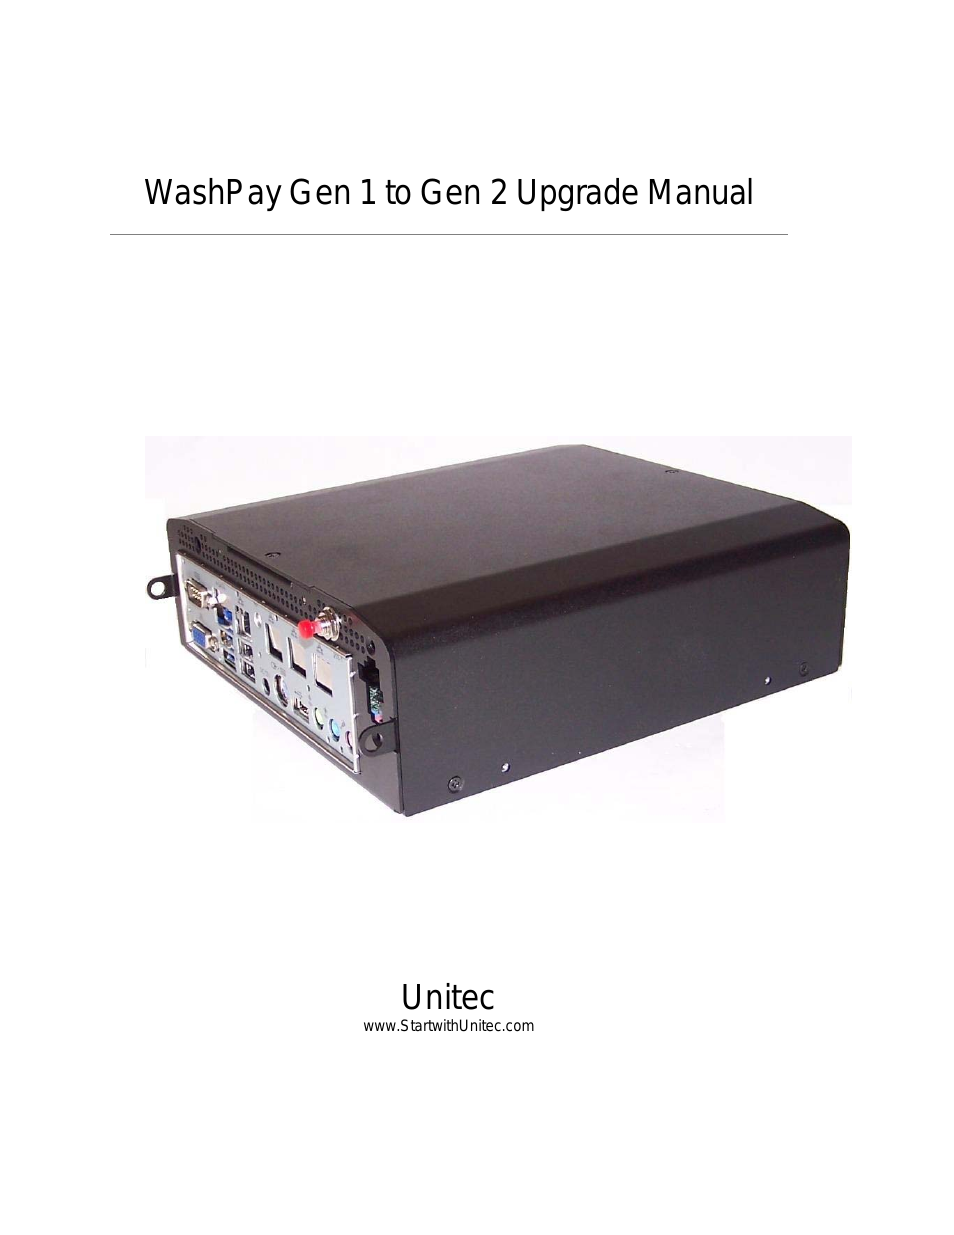 WashPay Gen 1 to Gen 2 Upgrade